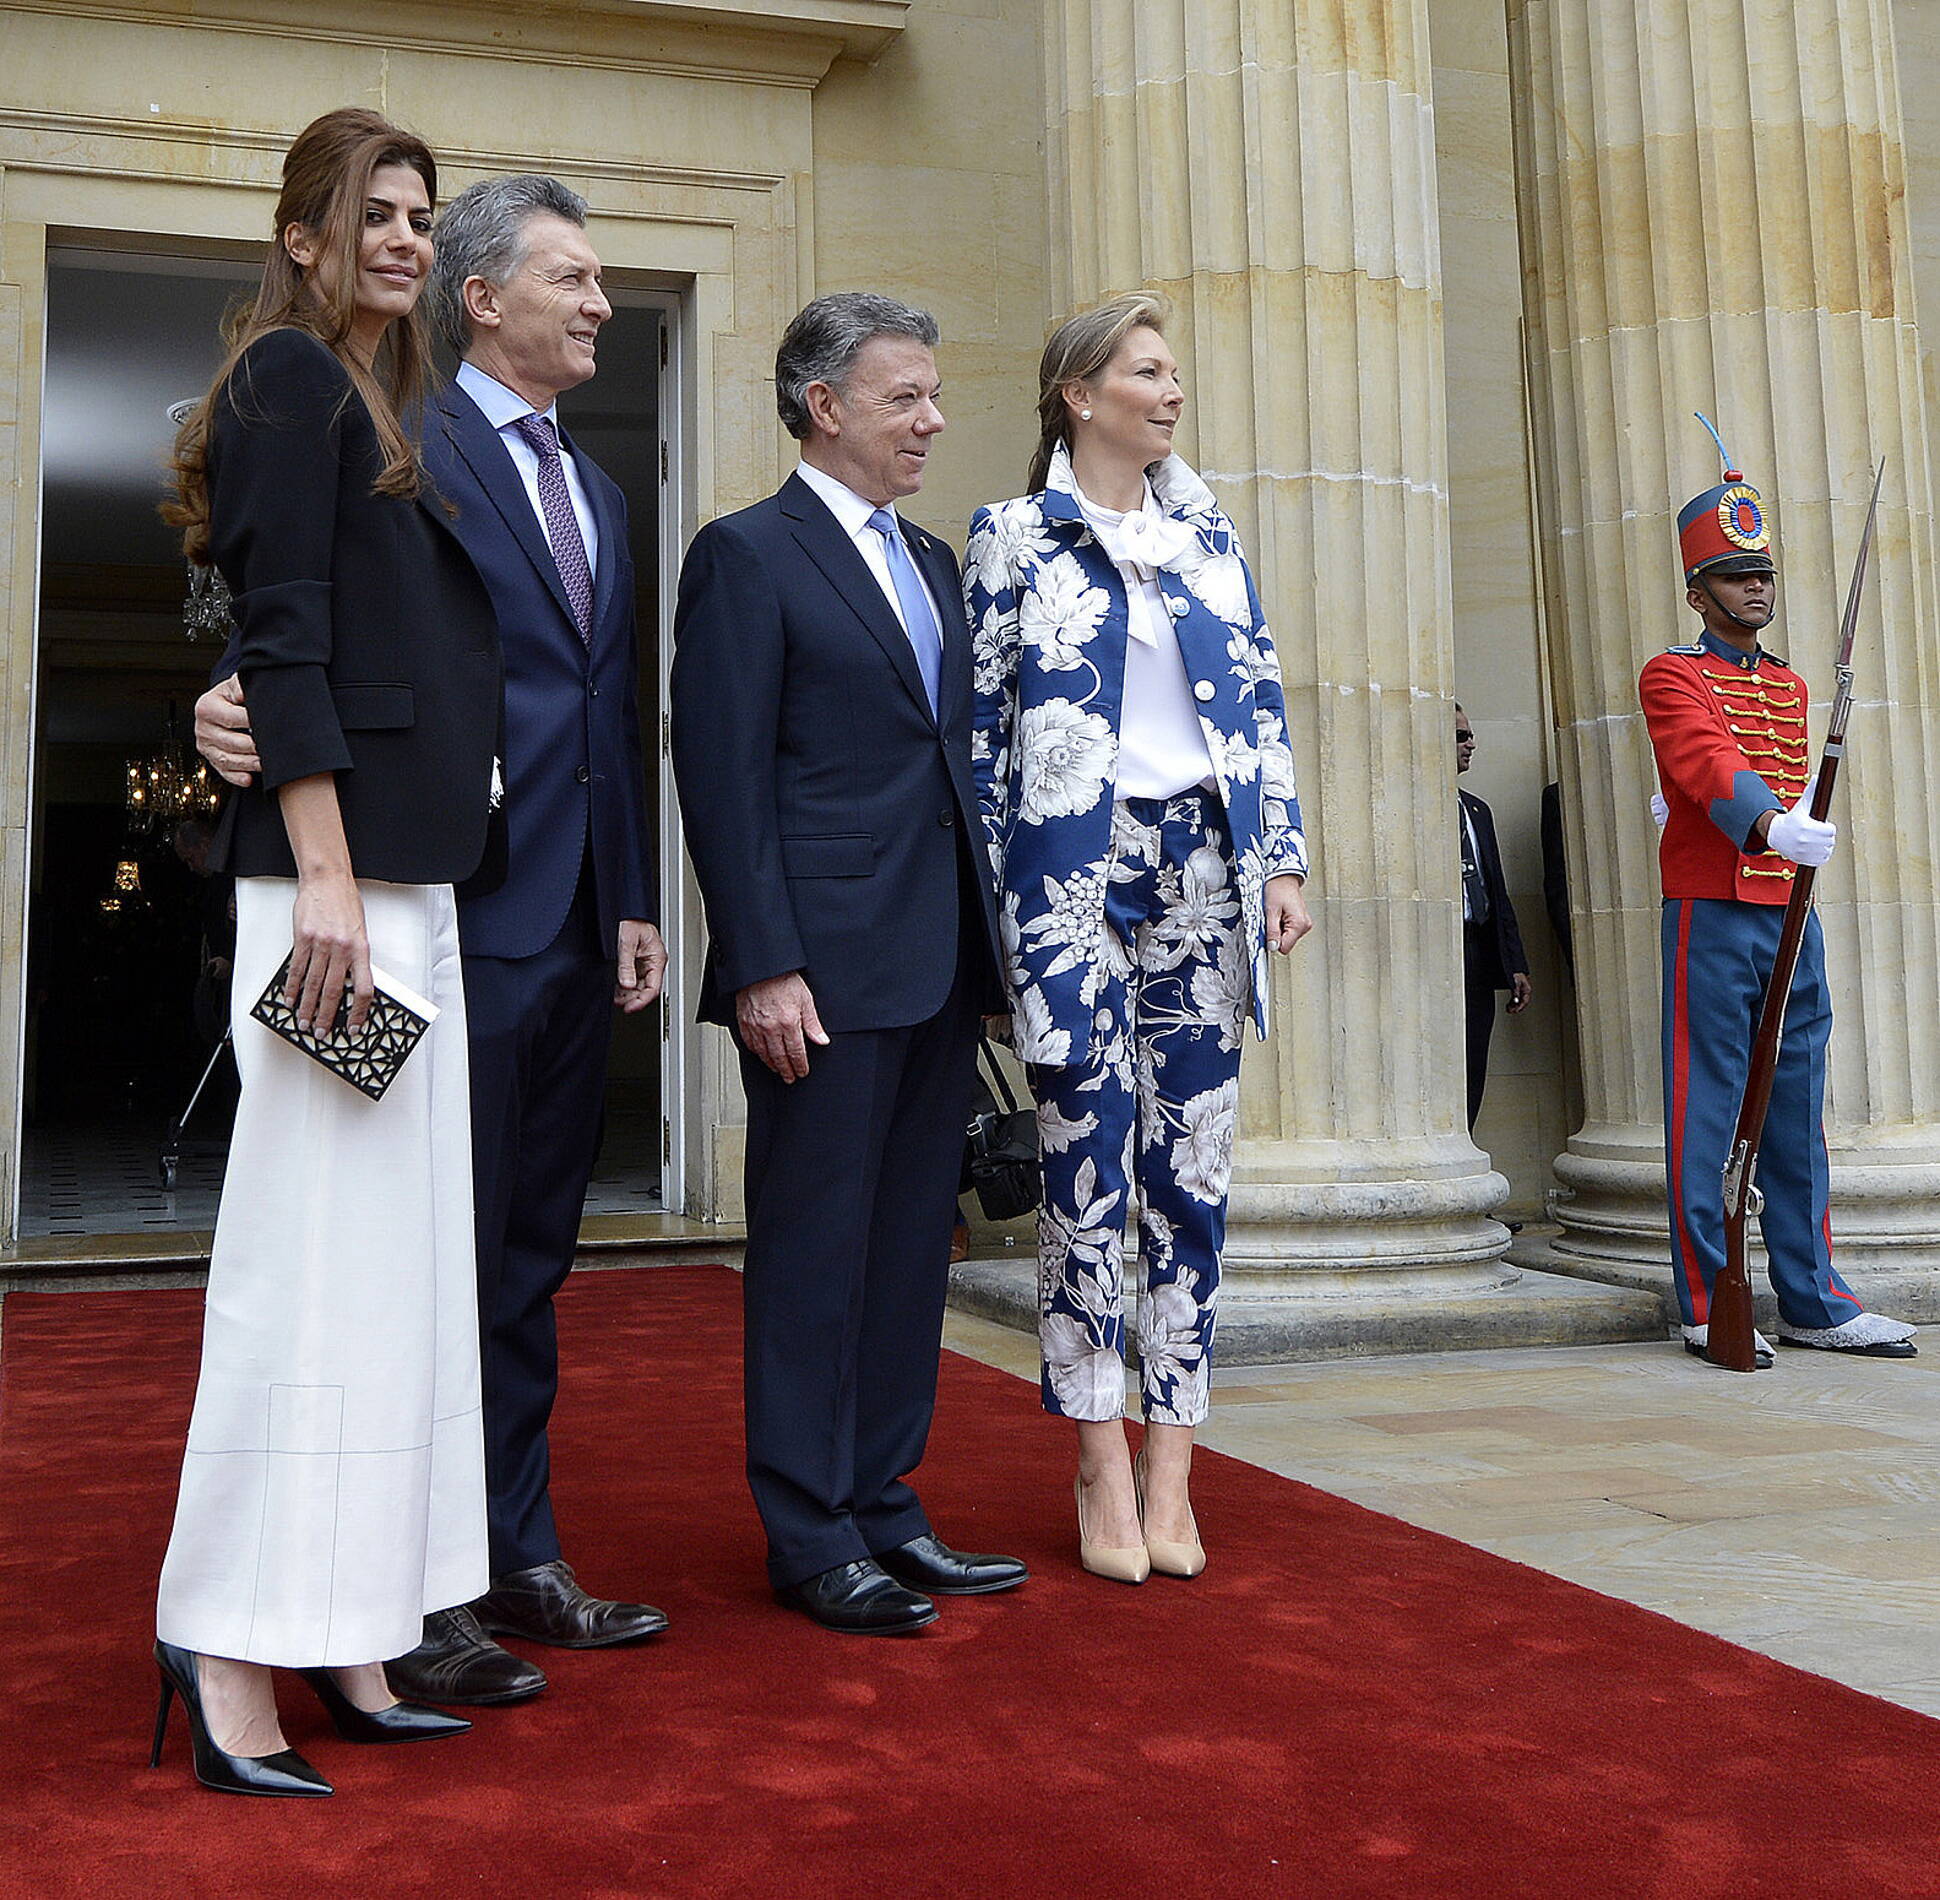 El presidente Macri se reunió con su par colombiano en Bogotá